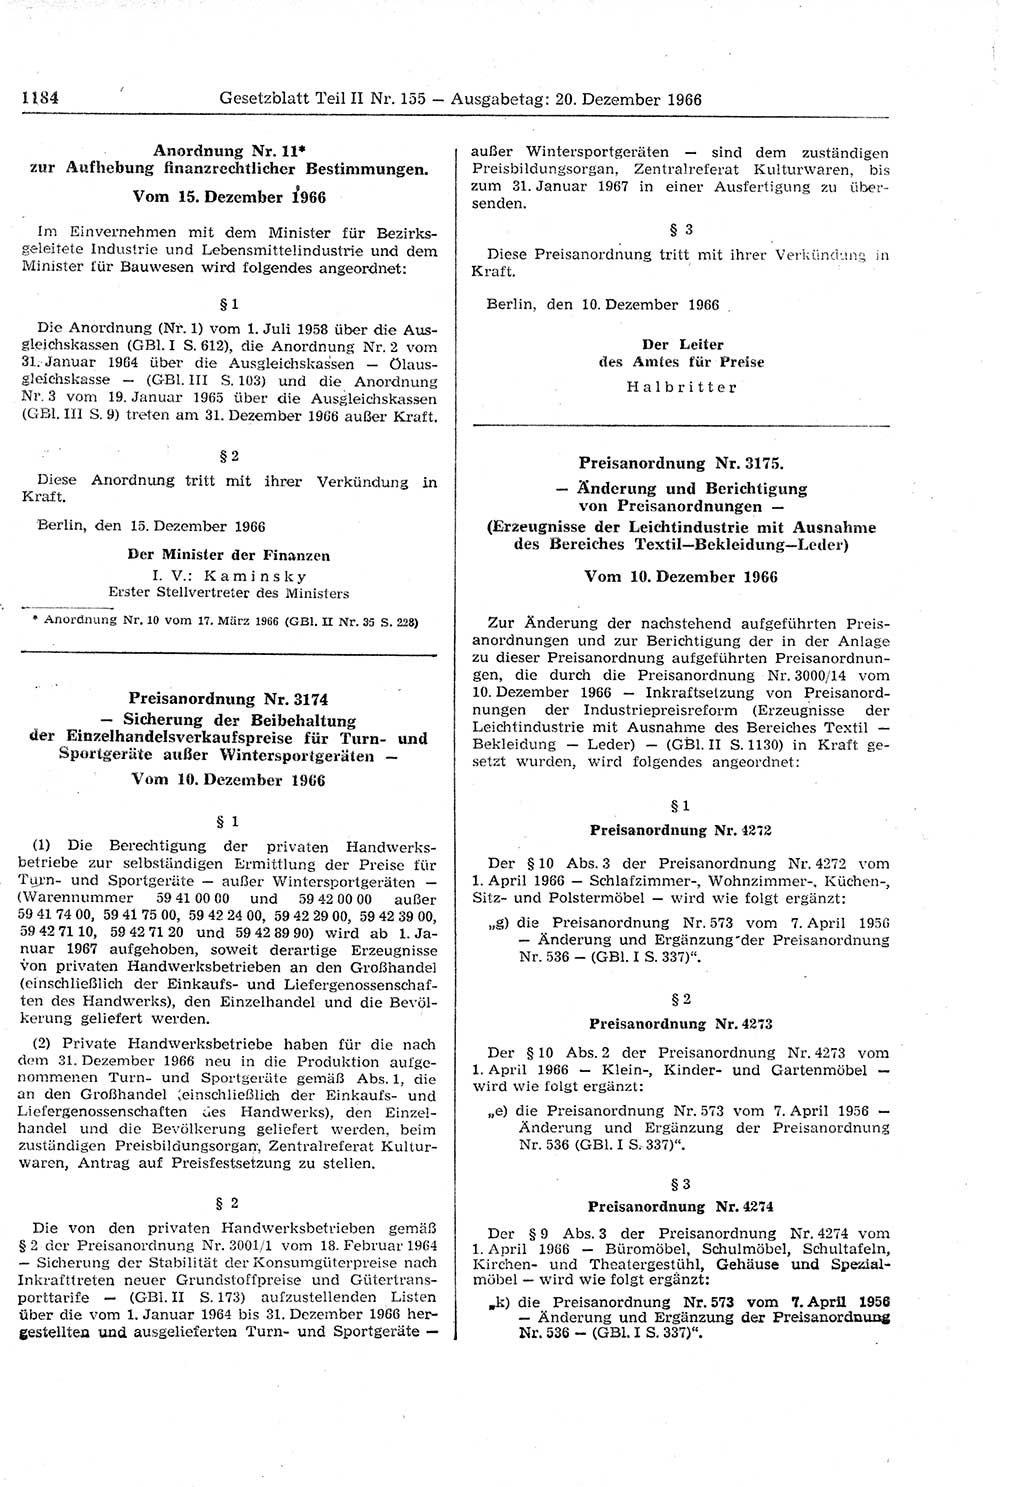 Gesetzblatt (GBl.) der Deutschen Demokratischen Republik (DDR) Teil ⅠⅠ 1966, Seite 1184 (GBl. DDR ⅠⅠ 1966, S. 1184)